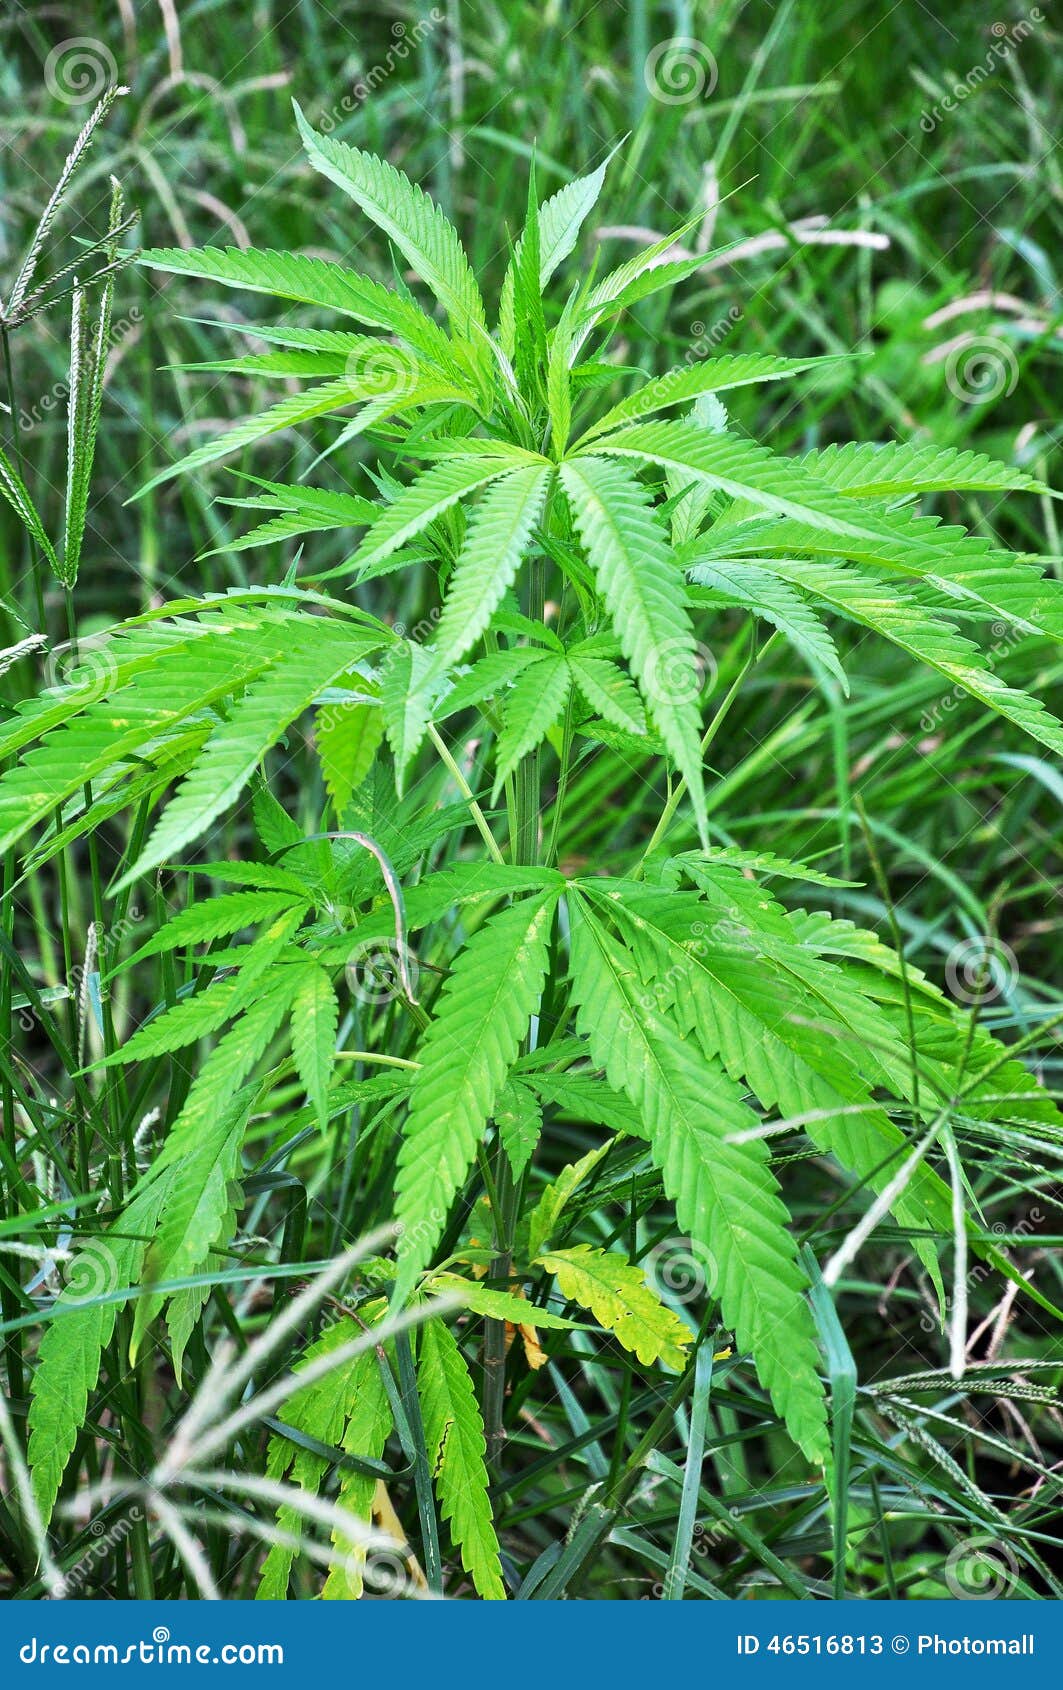 wild-hemp-plant-grass-wild-cannabis-4651